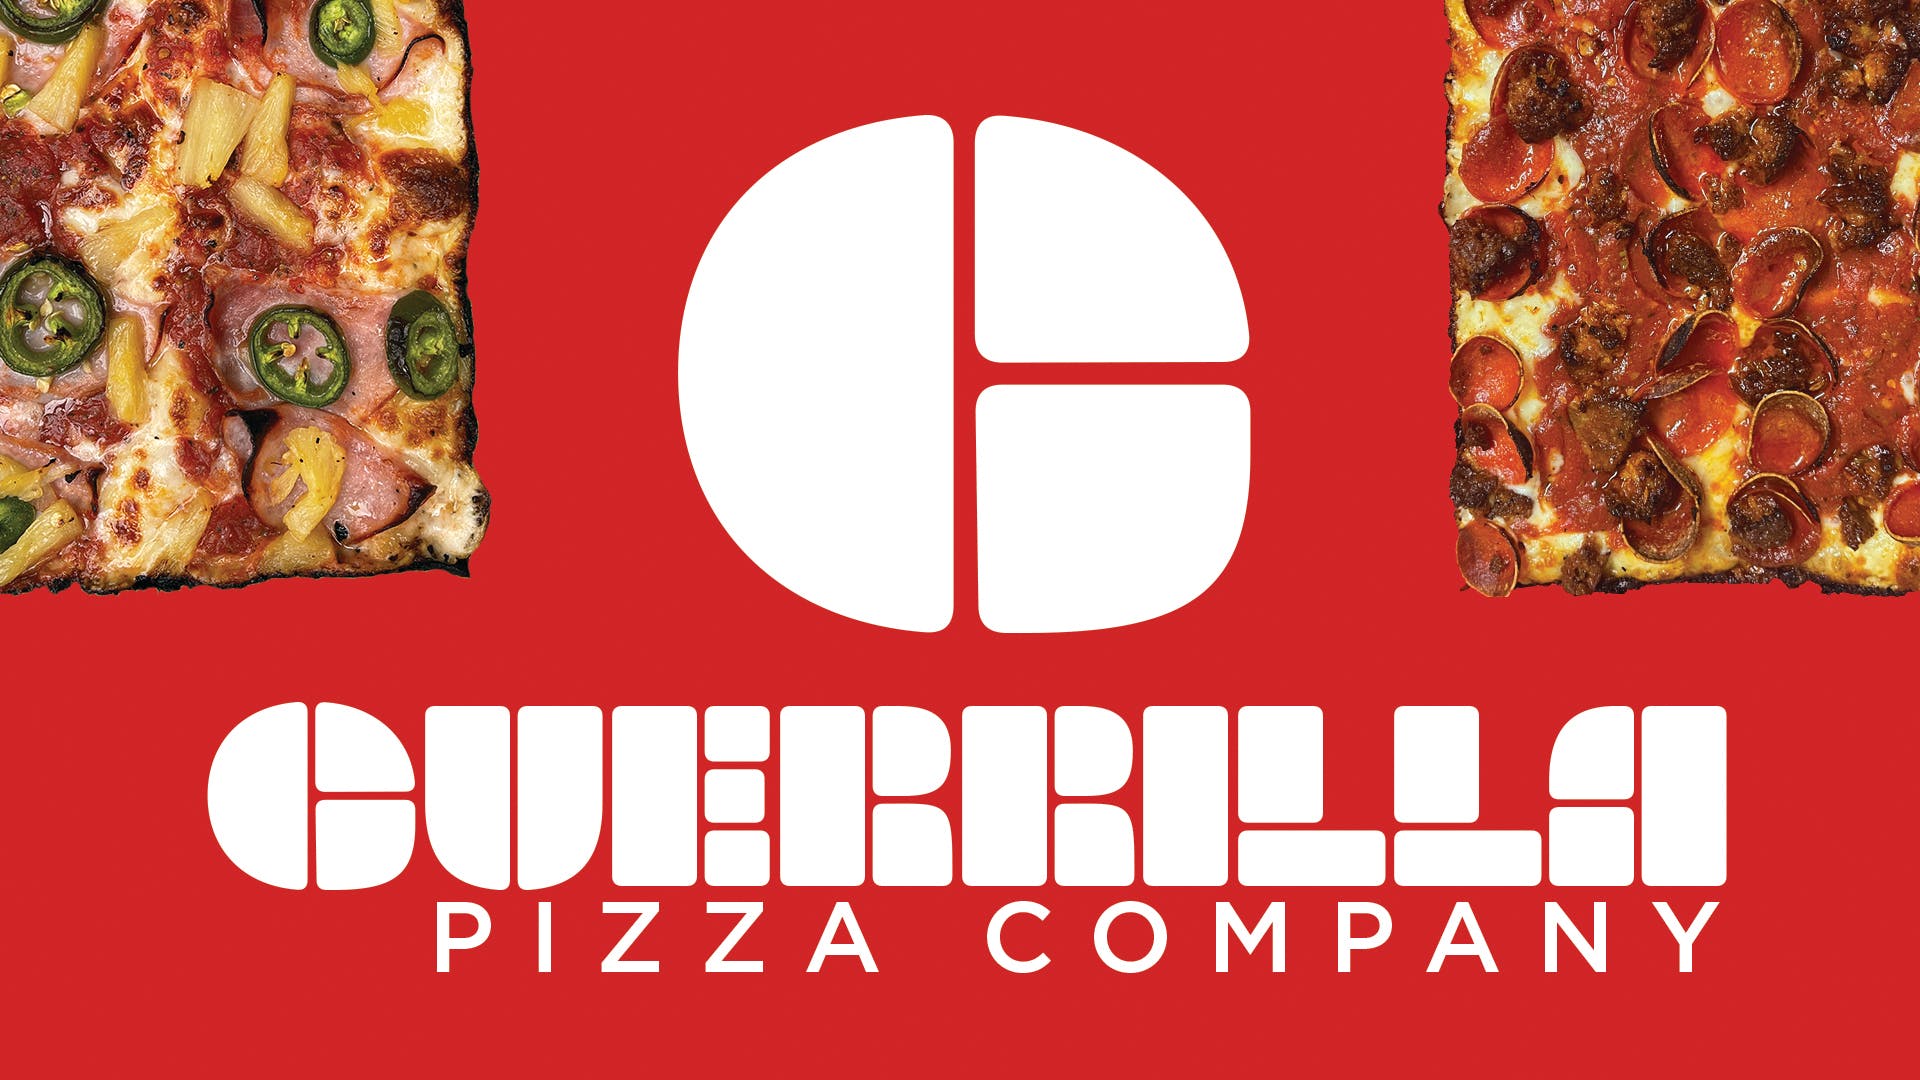 Guerrilla Pizza Co hero